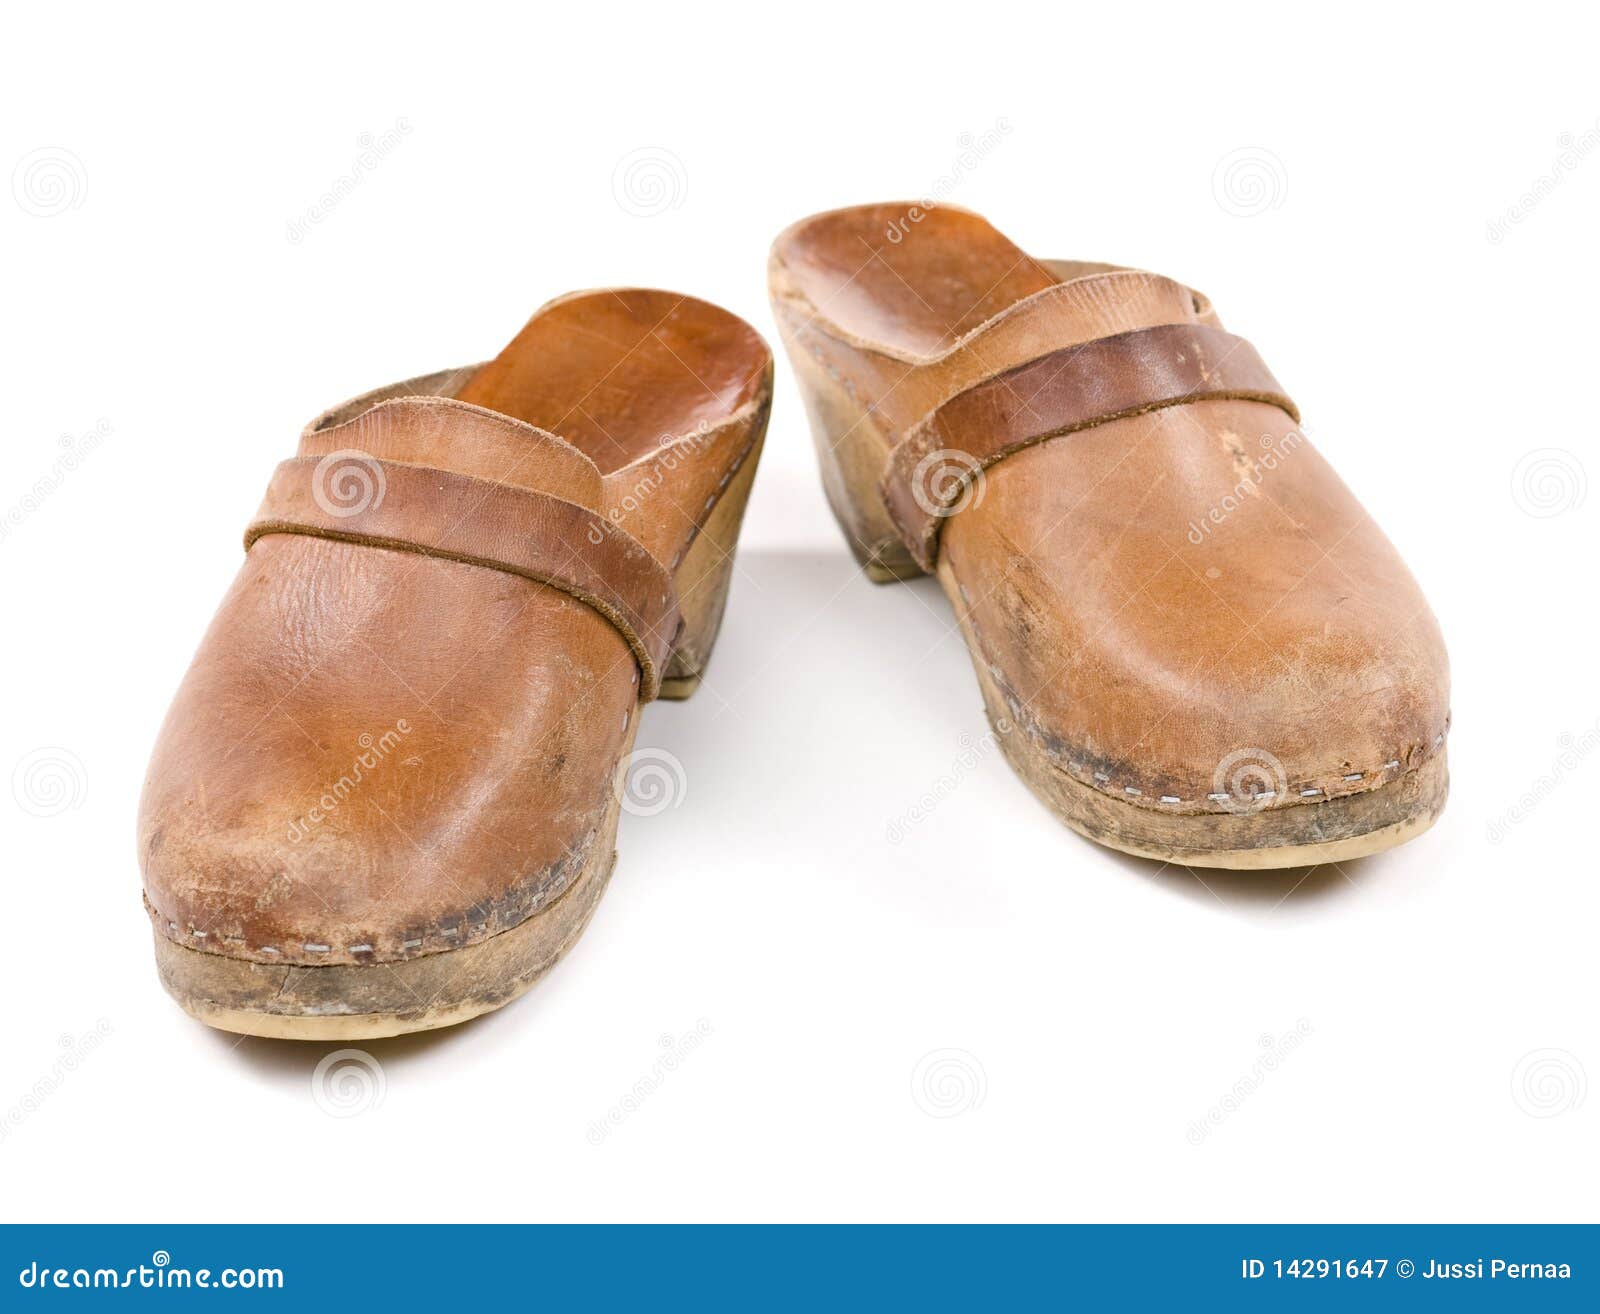 Vintage work shoes. stock image. Image of wood, footwear - 14291647